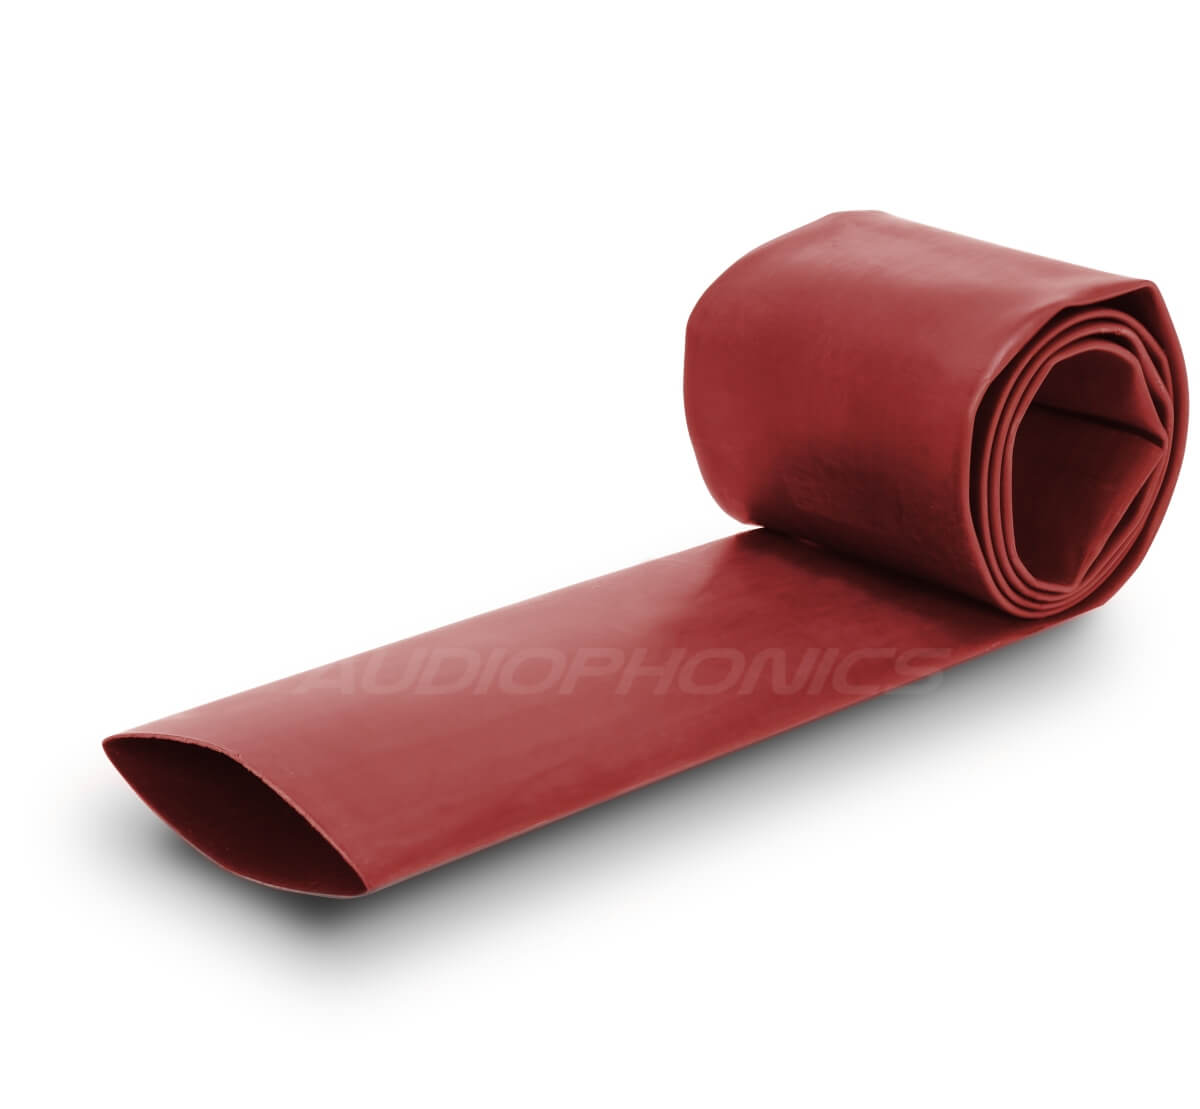 Heat-shrink tubing 3:1 Ø9.5mm Red (1m)